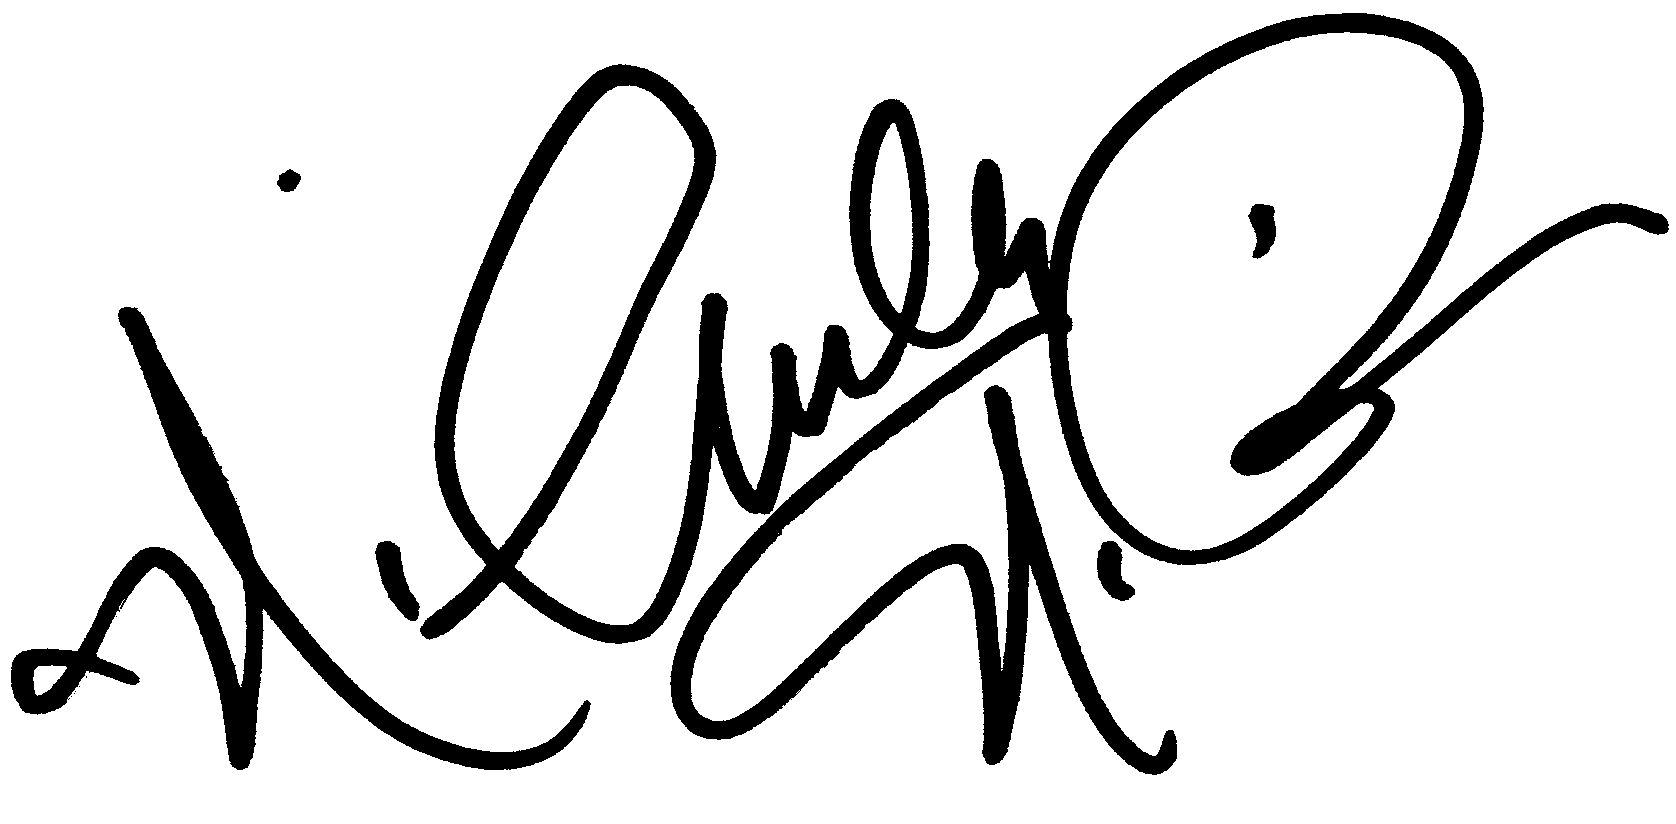 Nichelle Nichols autograph facsimile